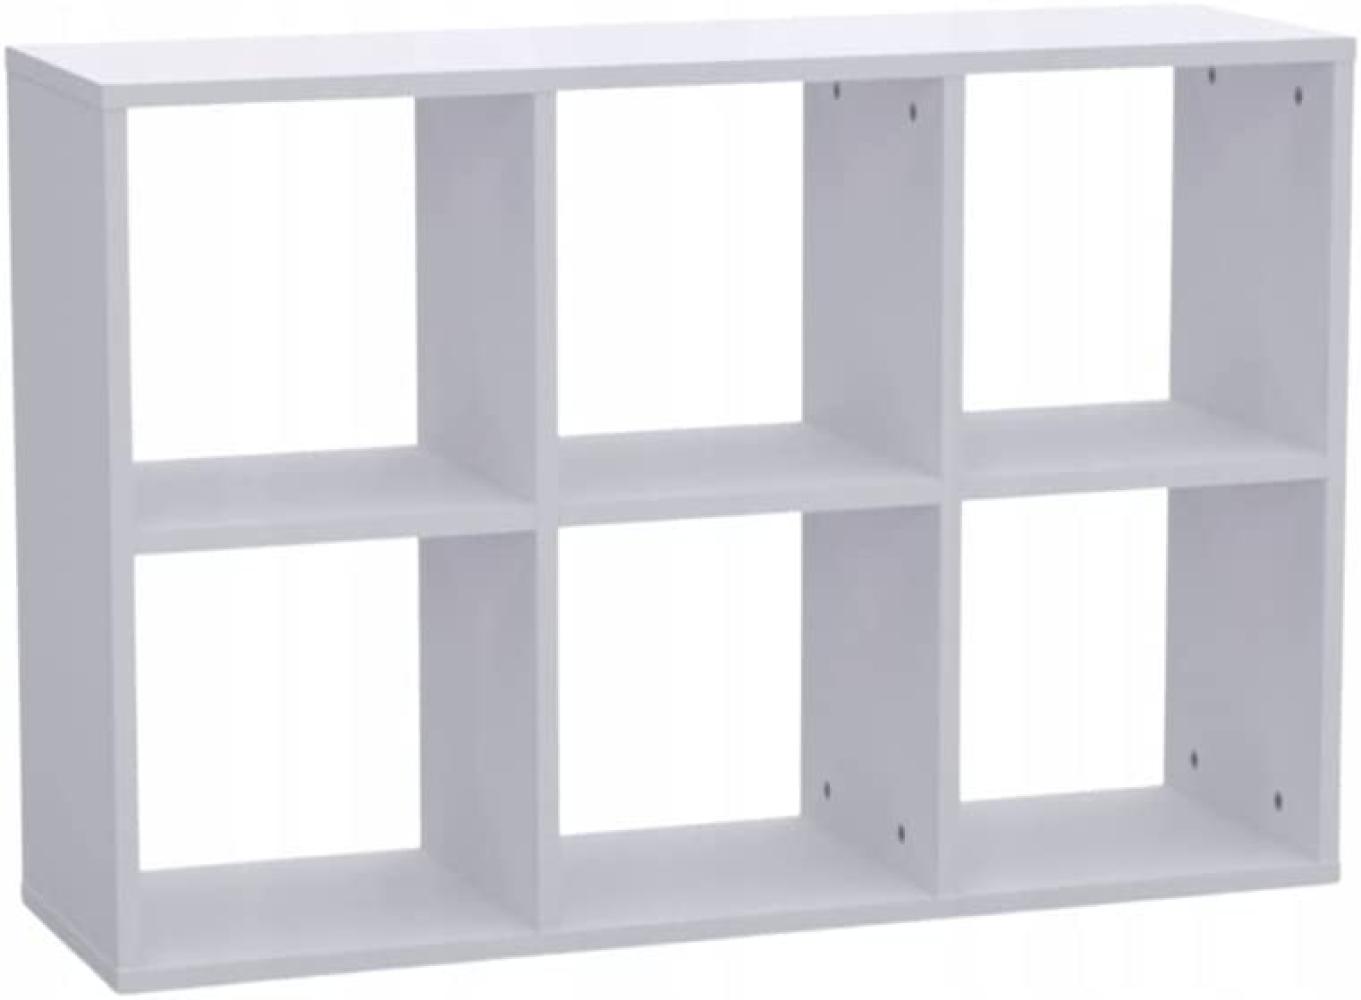 Kallax Regal 2x3 - Bücherregal 100 x 67,4 cm - Raumteiler Regal - Würfelregal für Wohnzimmerund Büro - Regal Würfel mit 6 Fächern - Aufbewahrung Regal Bild 1